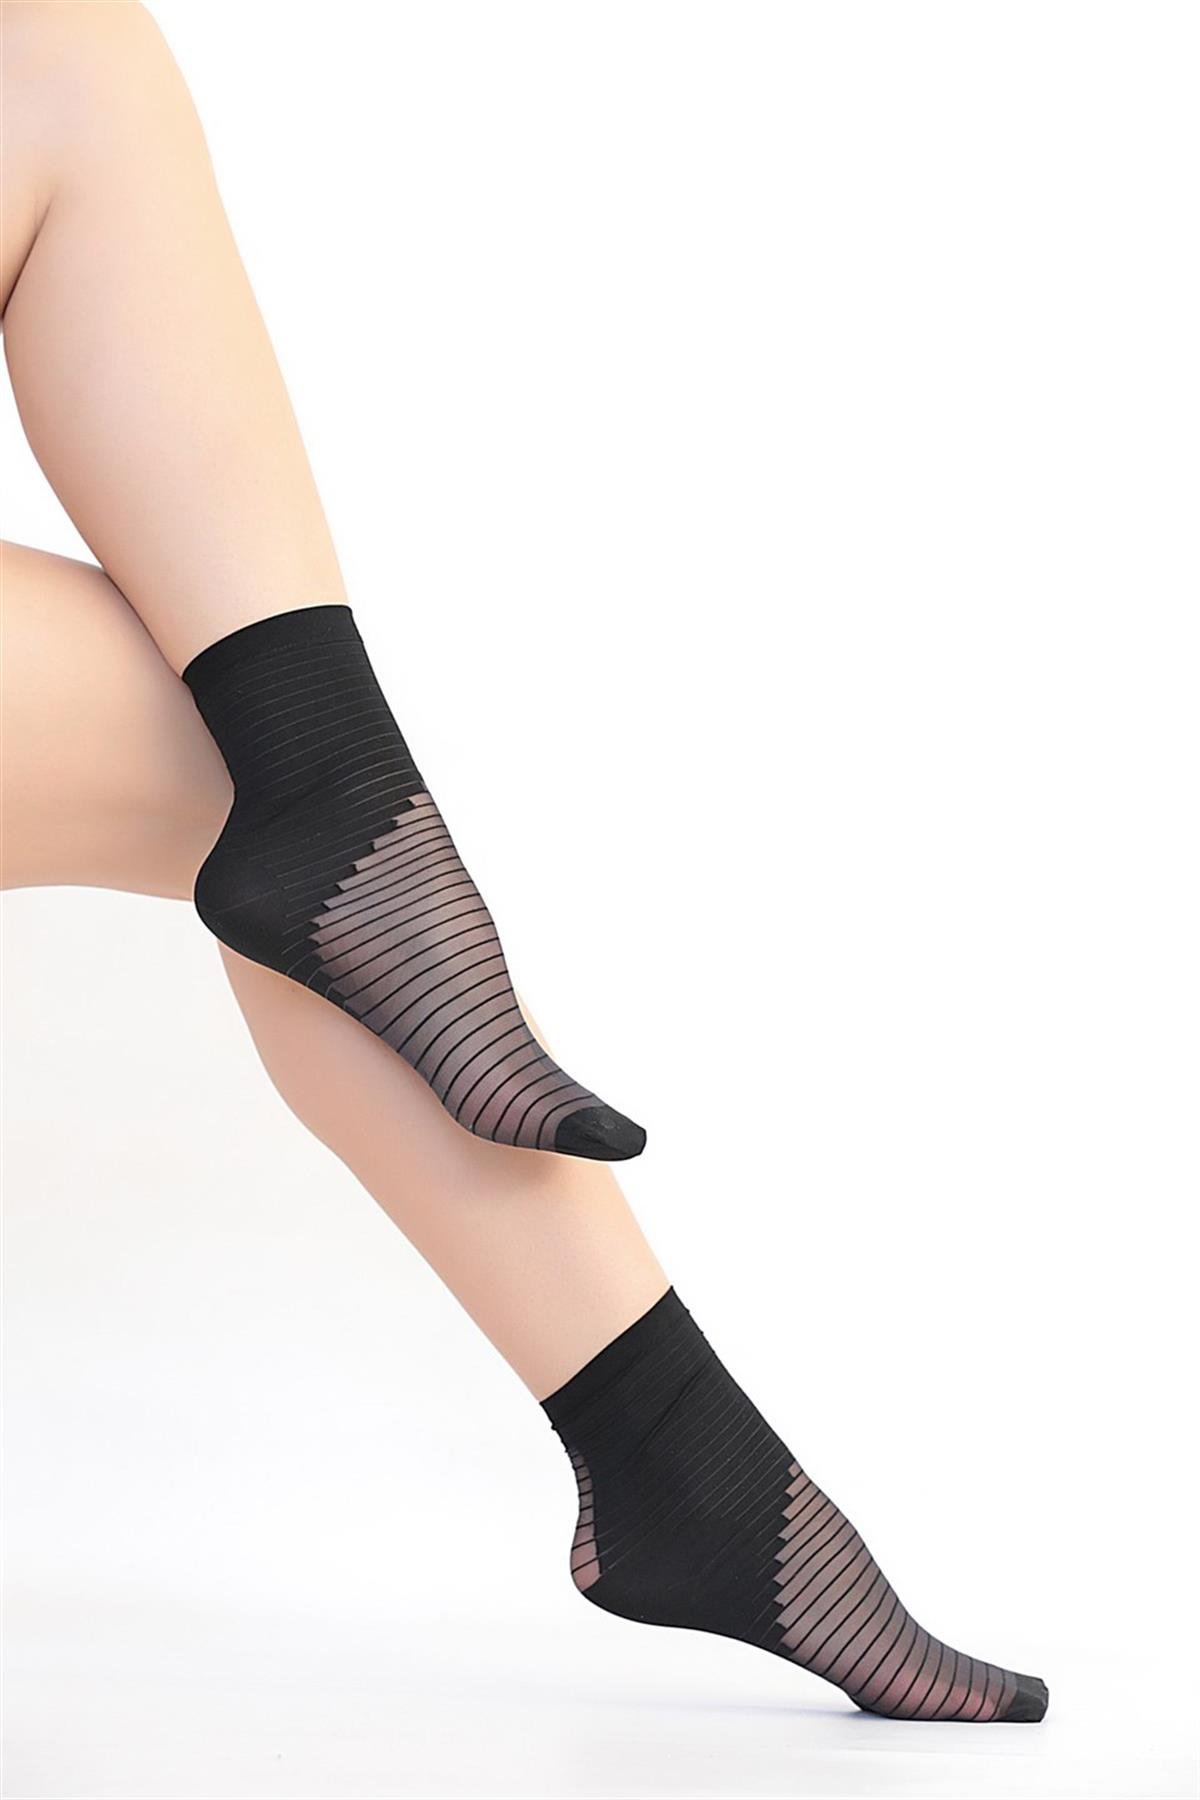 Daymod Darya Çizgi Desenli Bayan Soket Çorap | Çamaşırcımshop